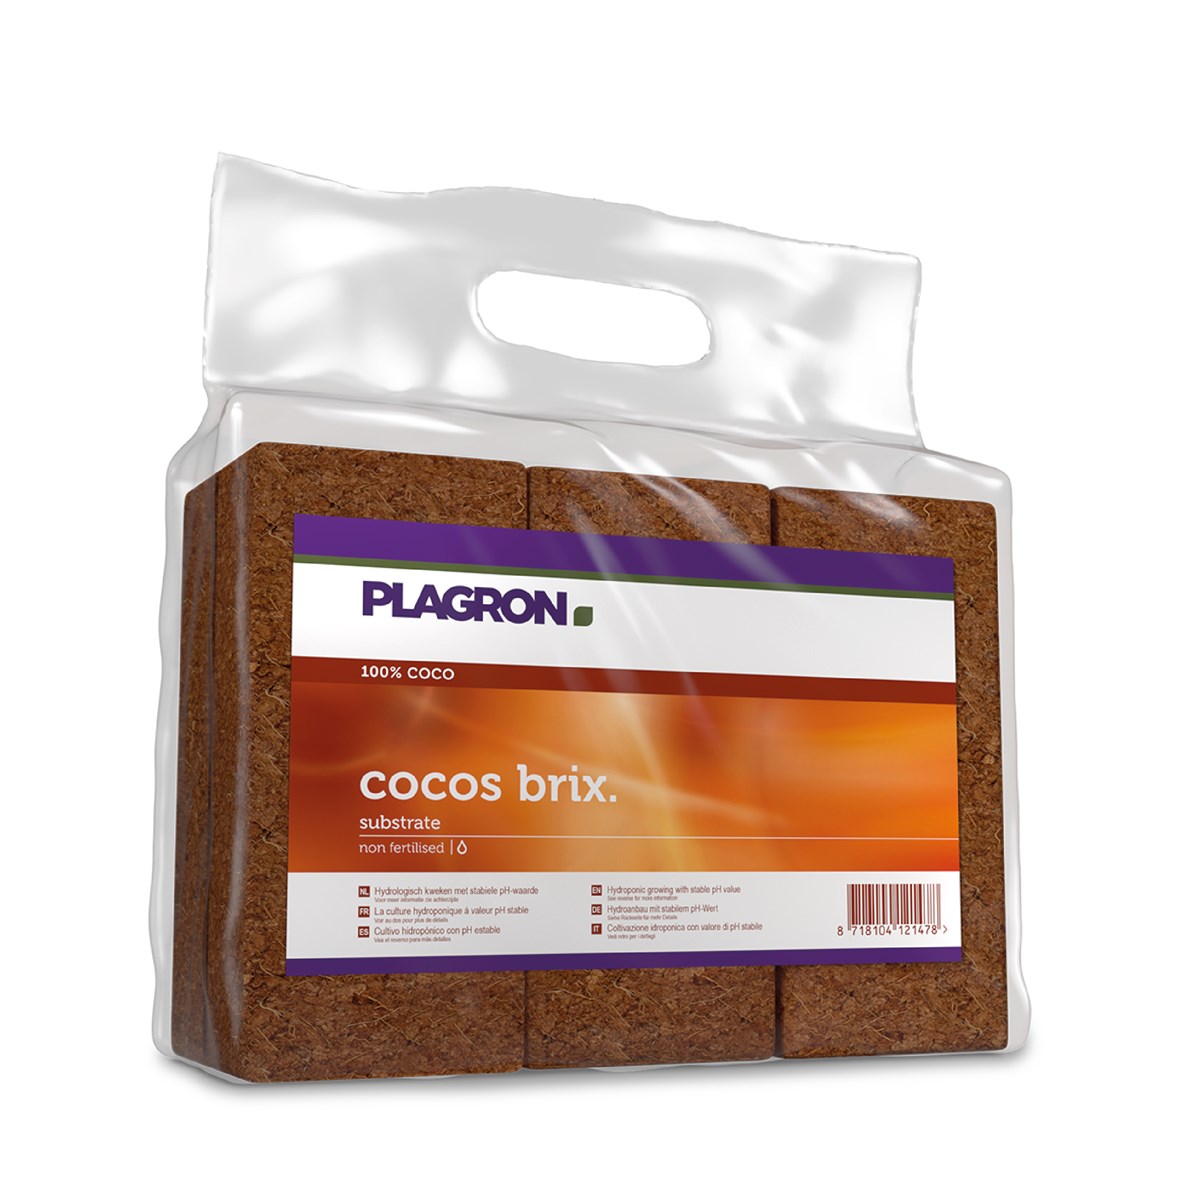 Plagron Cocos Brix (6x)